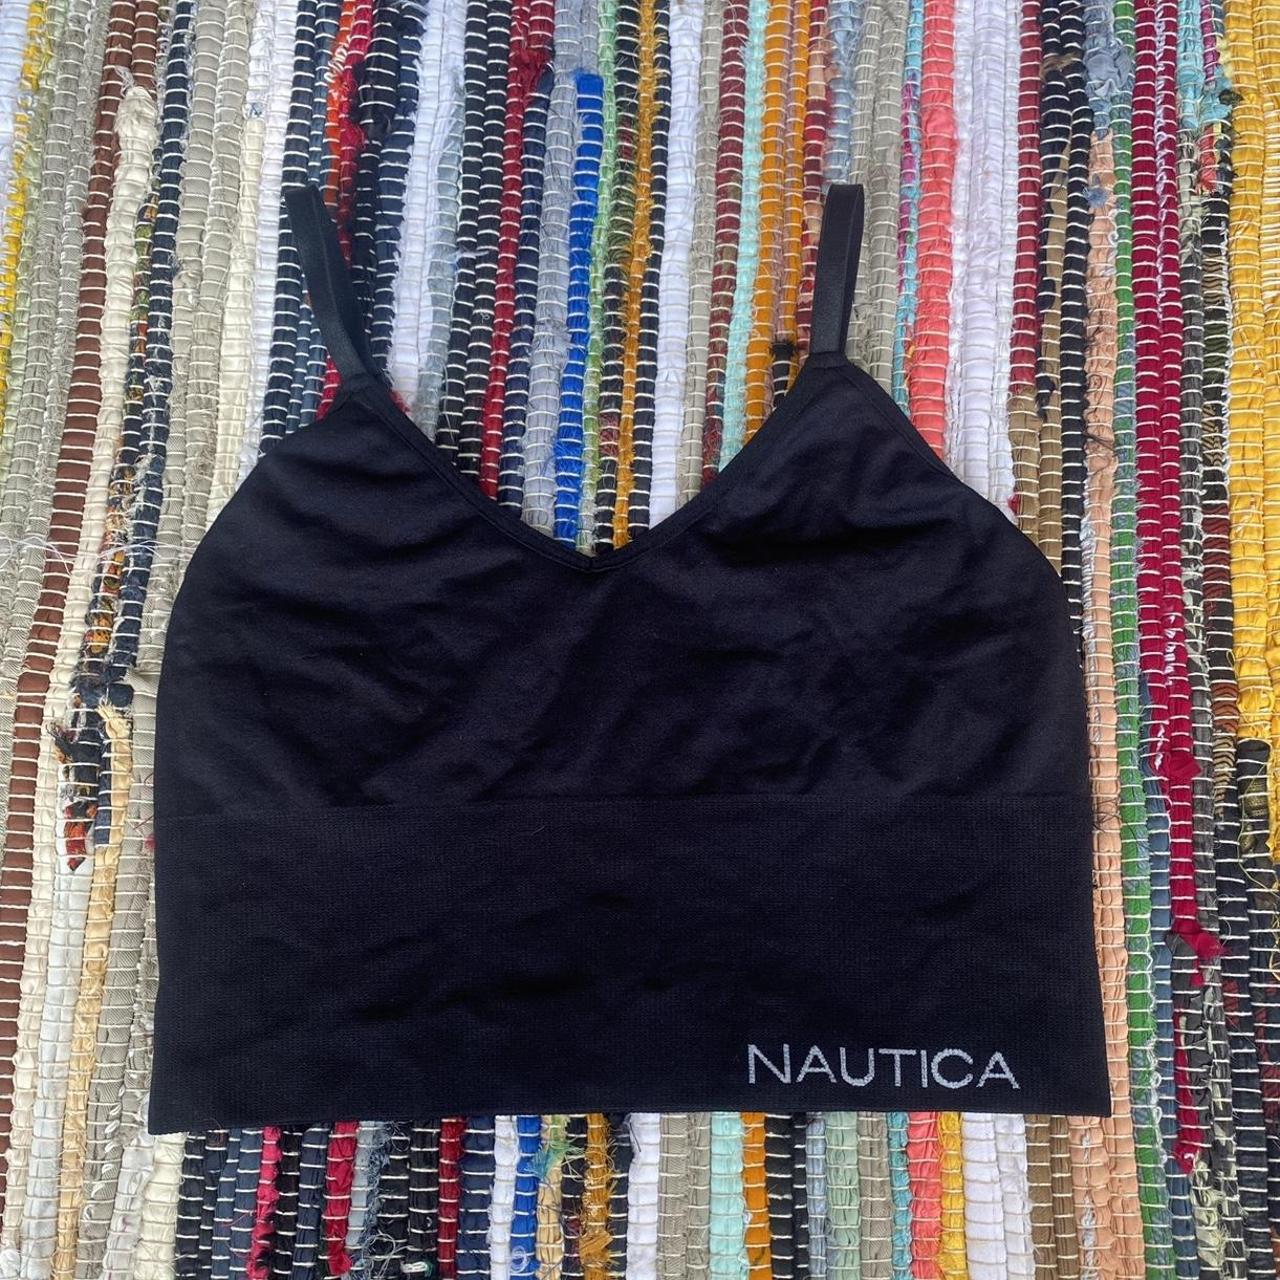 Nautica sports bra or spandex crop top Super cute, - Depop